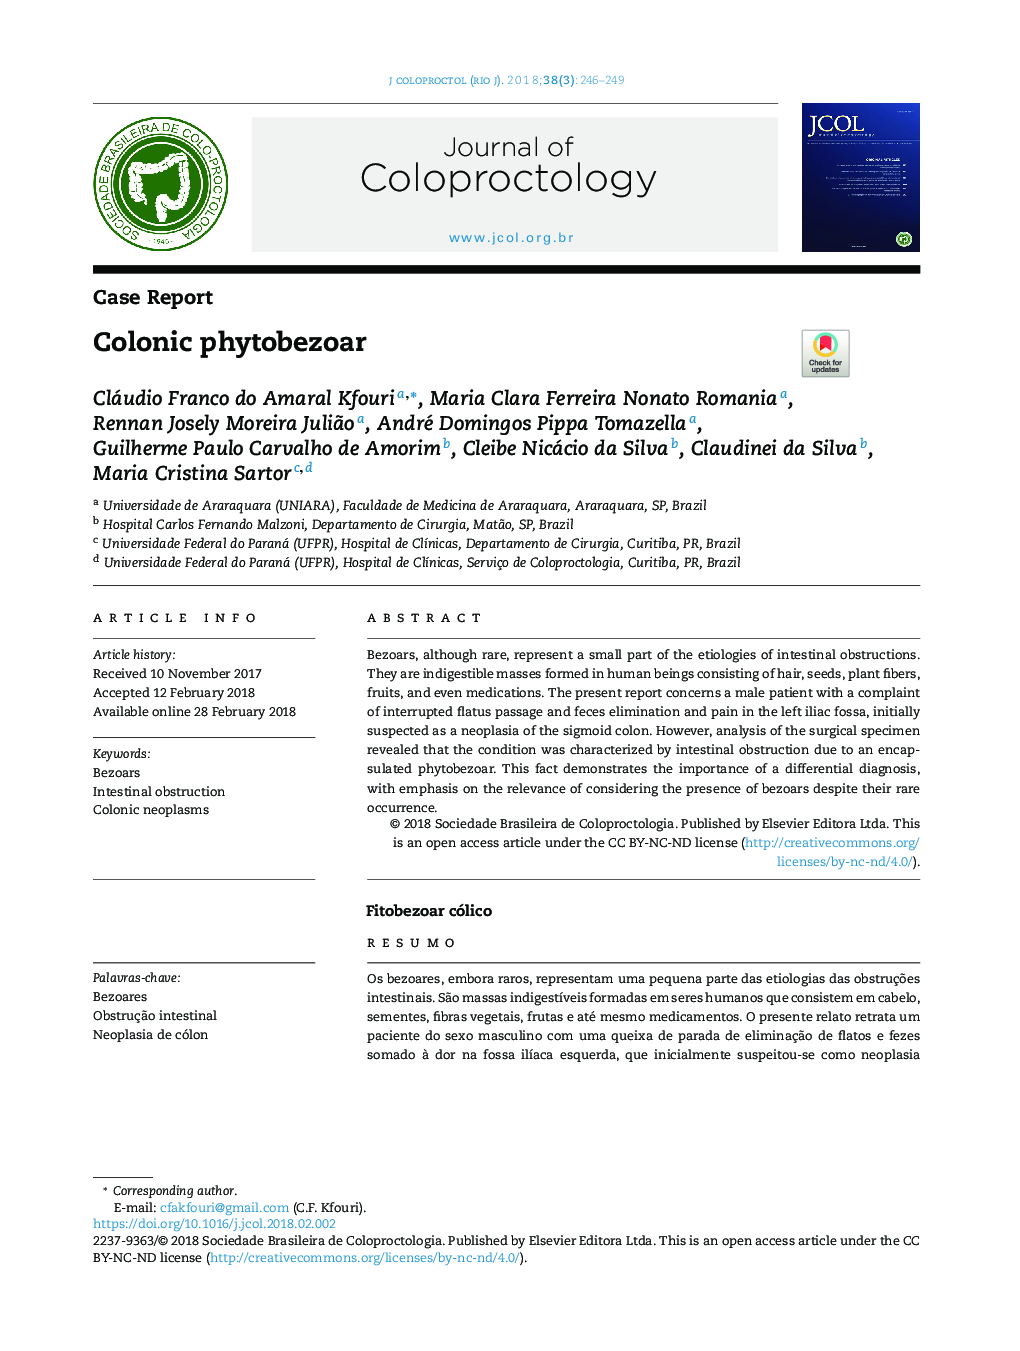 Colonic phytobezoar